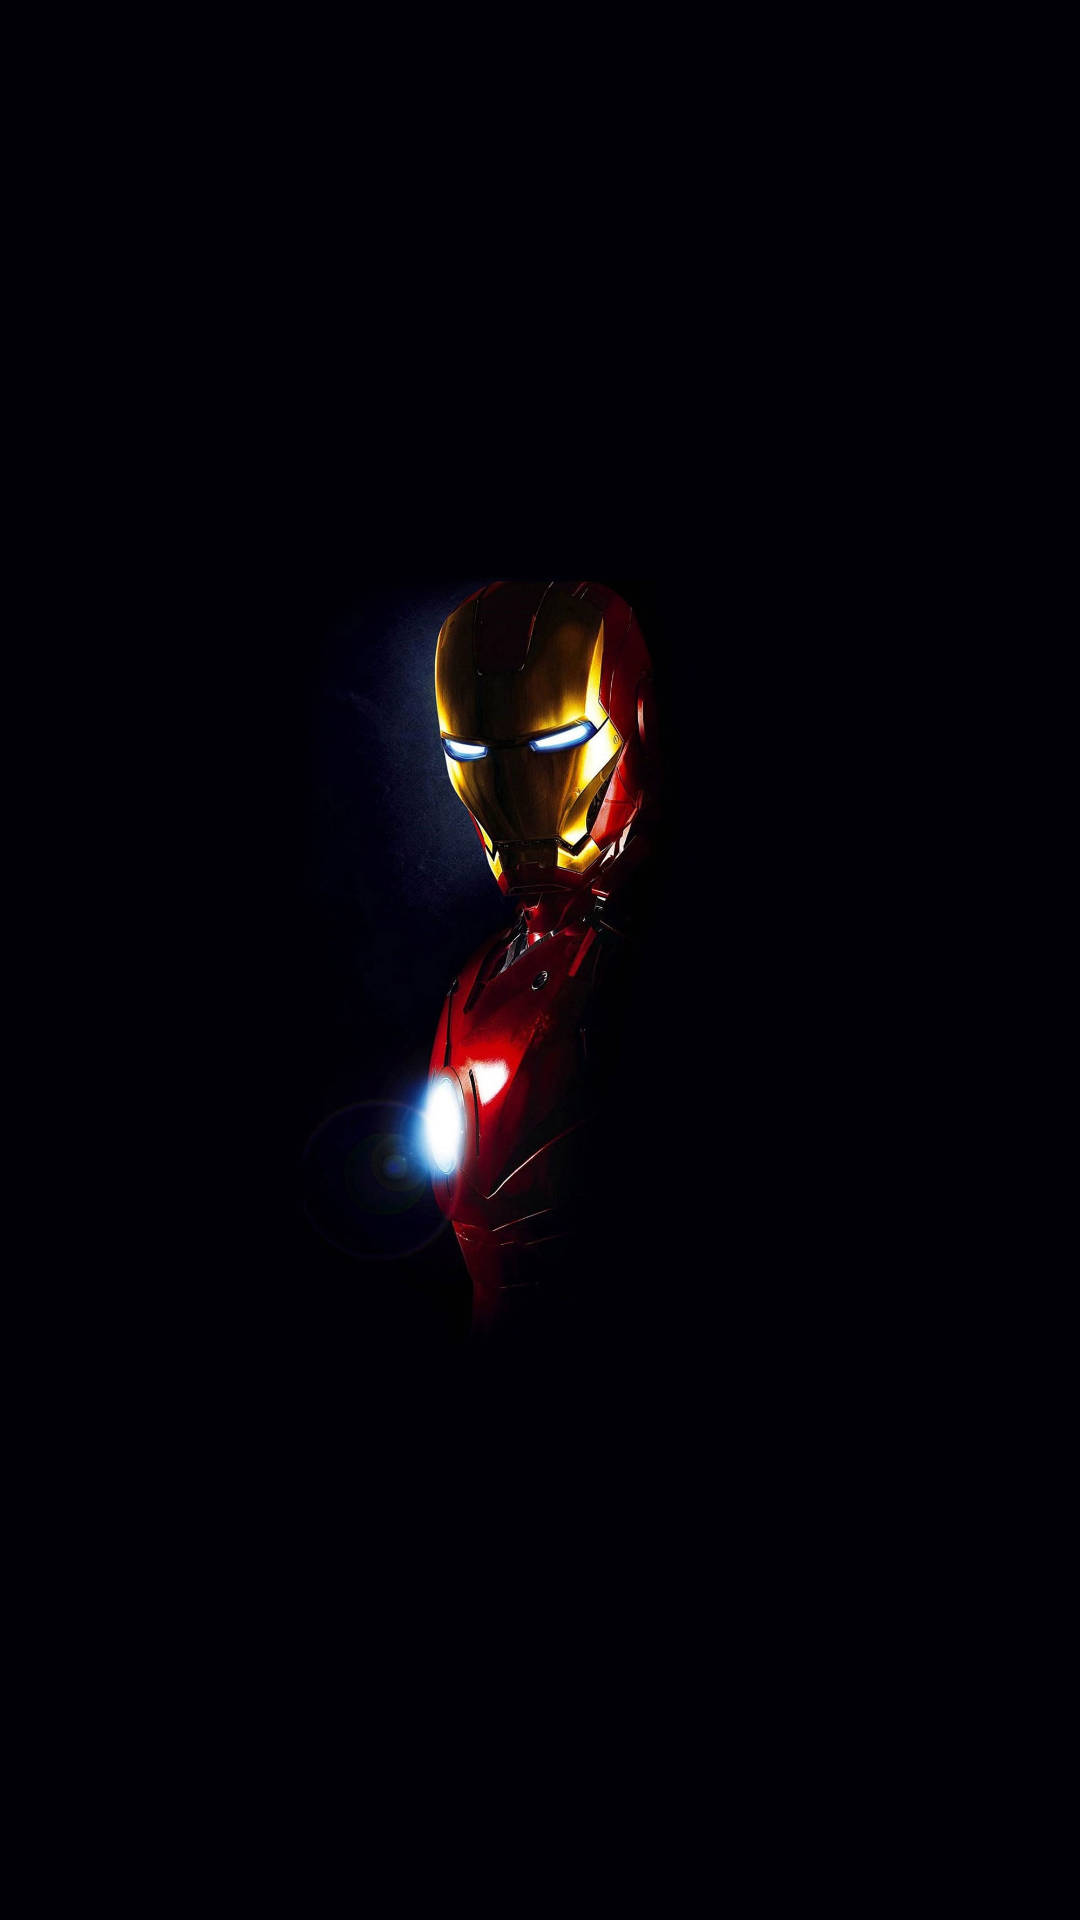 Fondode Pantalla Para Teléfono Android De Iron Man Oscuro. Fondo de pantalla